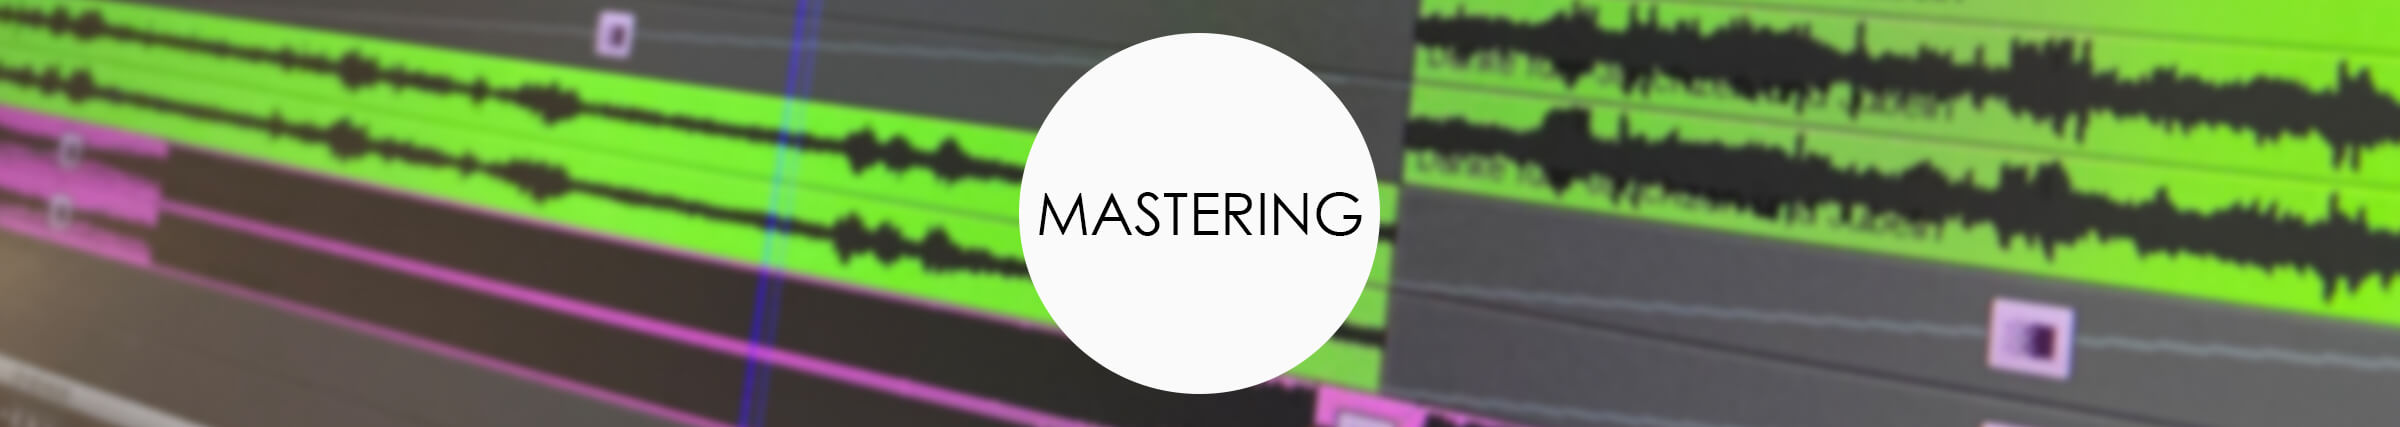 mastering-full